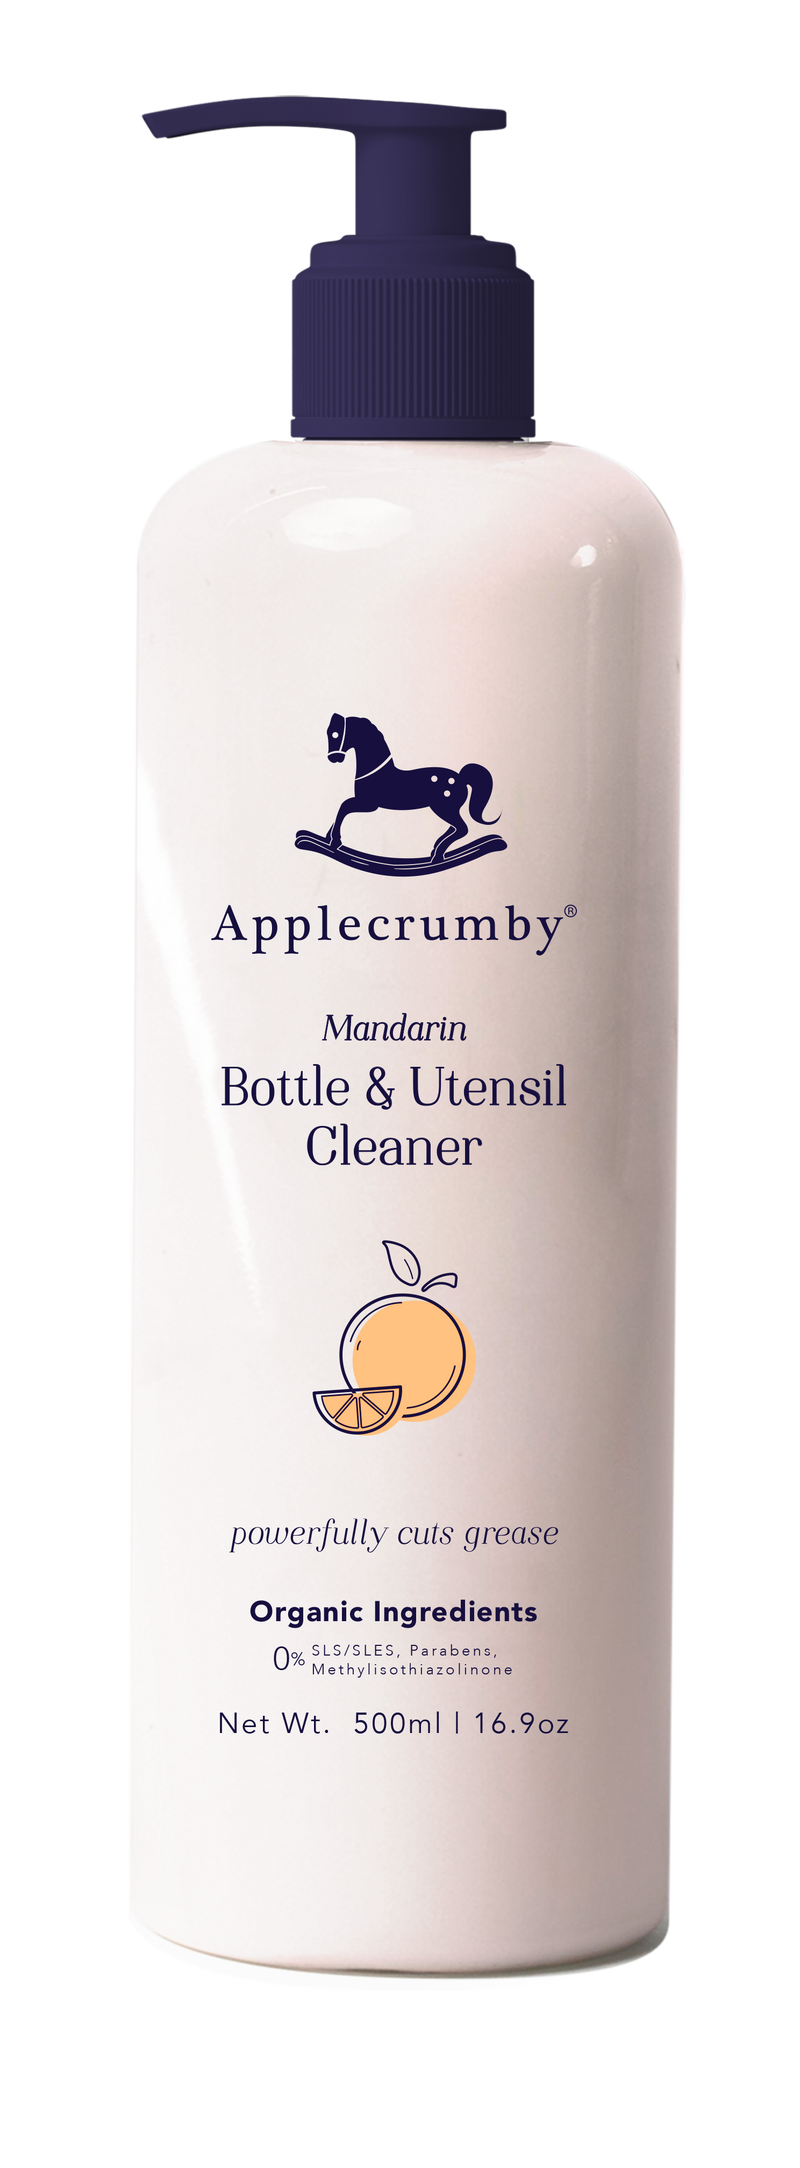 Applecrumby Bottle & Utensil Cleaner 500ml - Mandarin